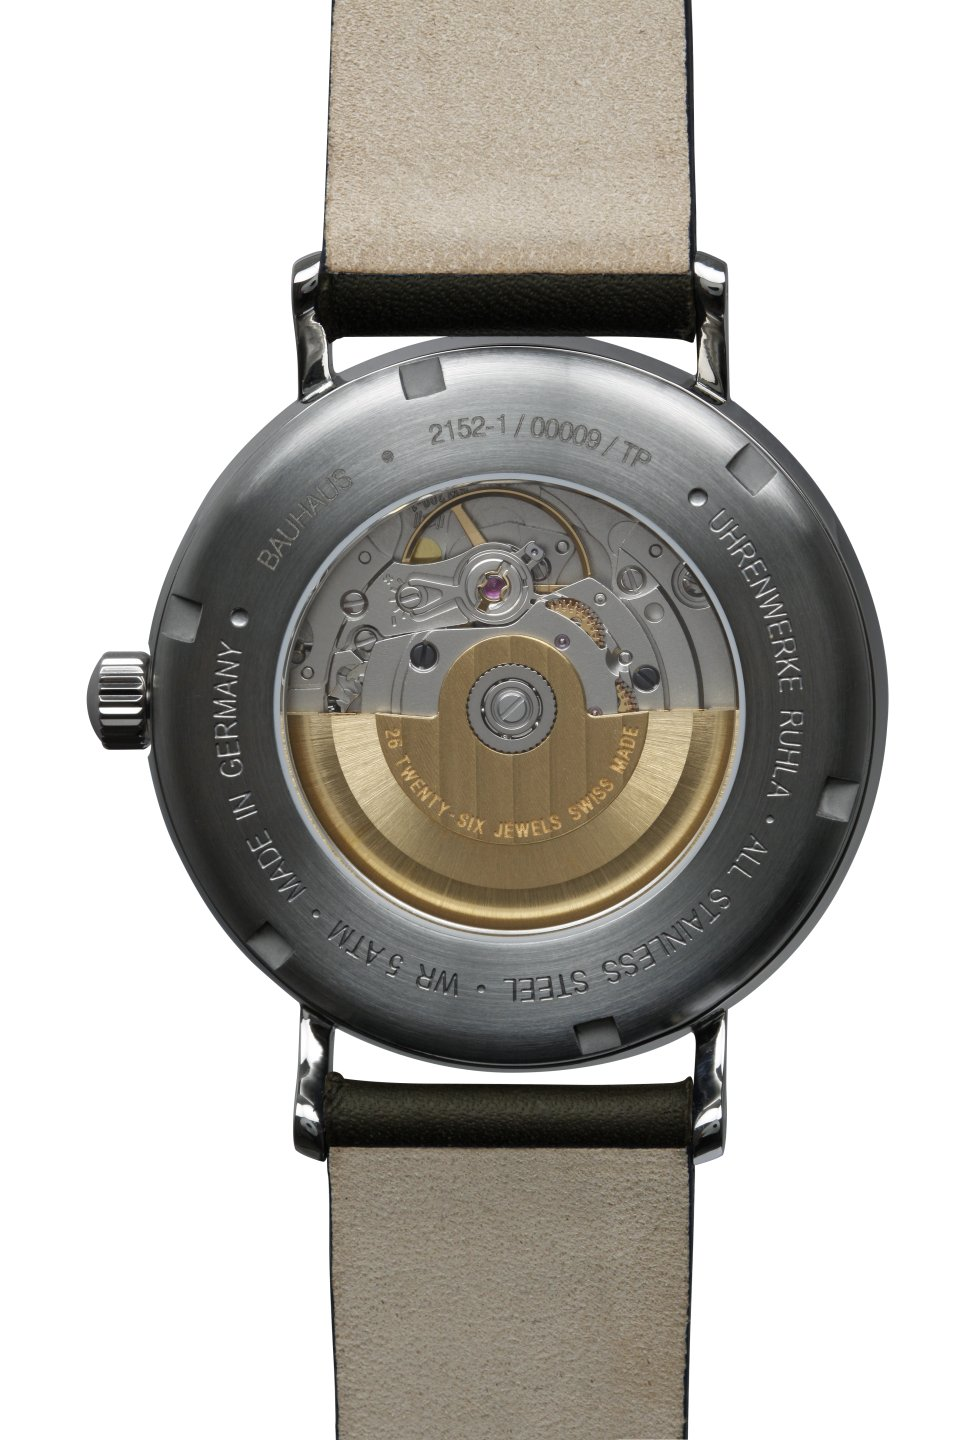 WEISS - Bauhaus-Automatikuhr-2152-1 Optik Uhren · · Juwelen